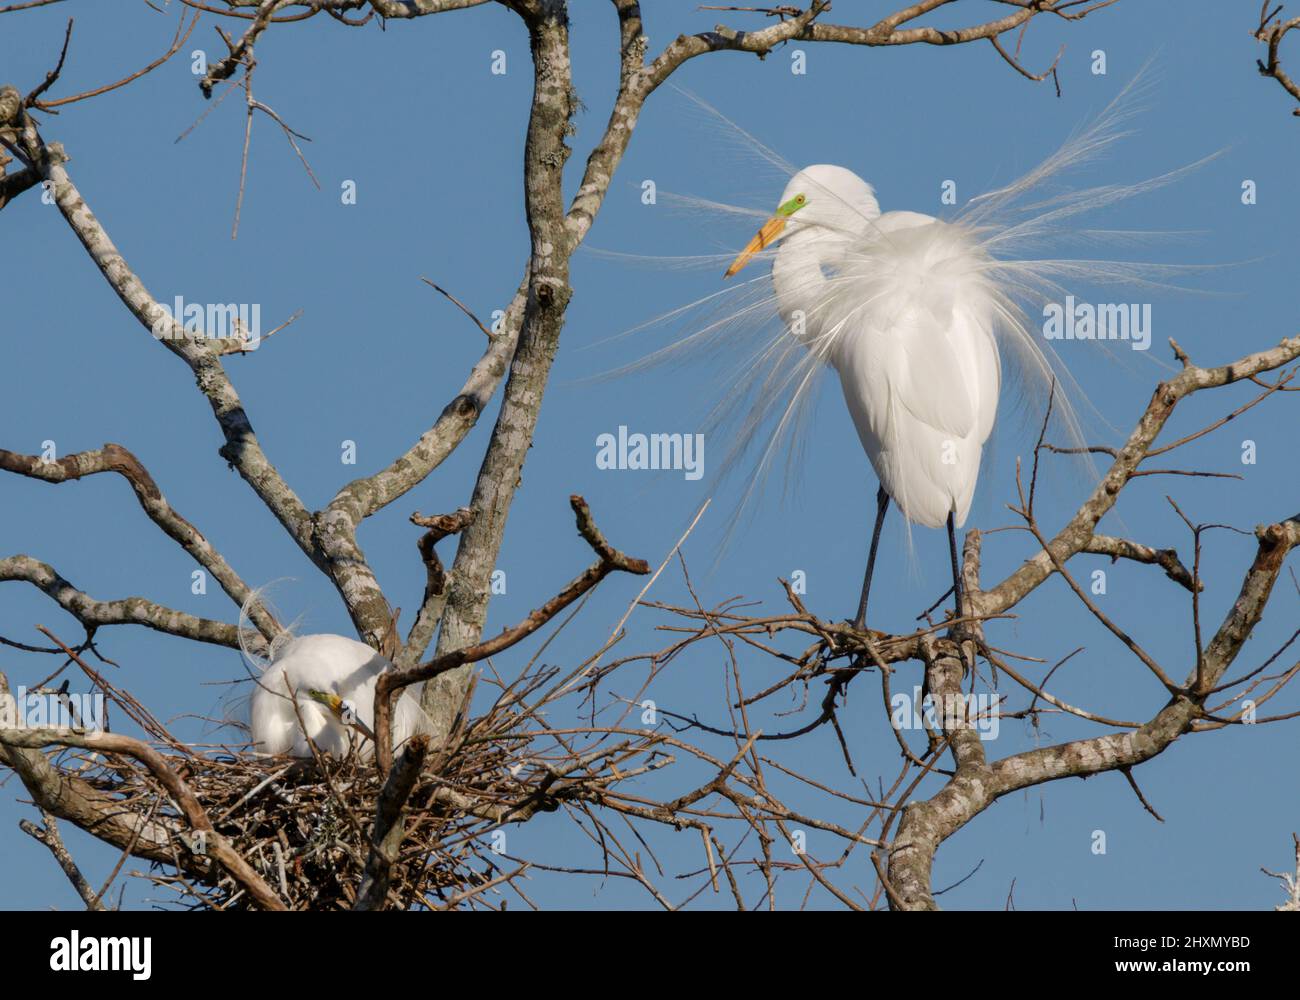 Grande paire d'aigrettes (Ardea alba) montrant un plumage de reproduction près du nid pendant la saison de reproduction, Alvin, Texas, États-Unis. Banque D'Images